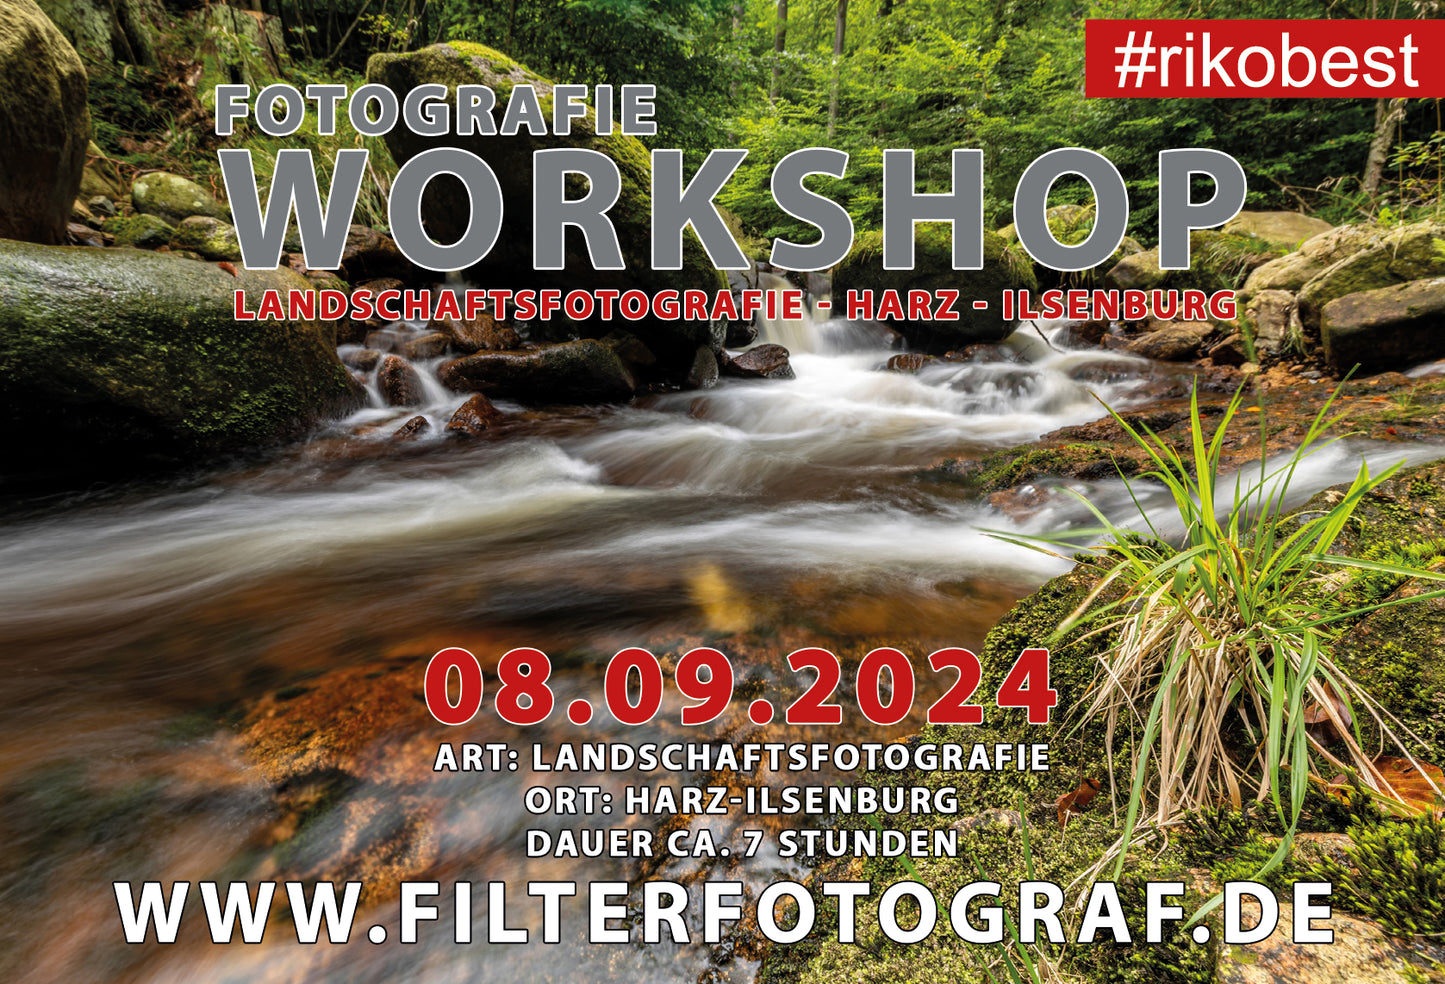 Landscape Photography Workshop Harz September 8th, 2024 - Day workshop - long exposure, optical filters, image design